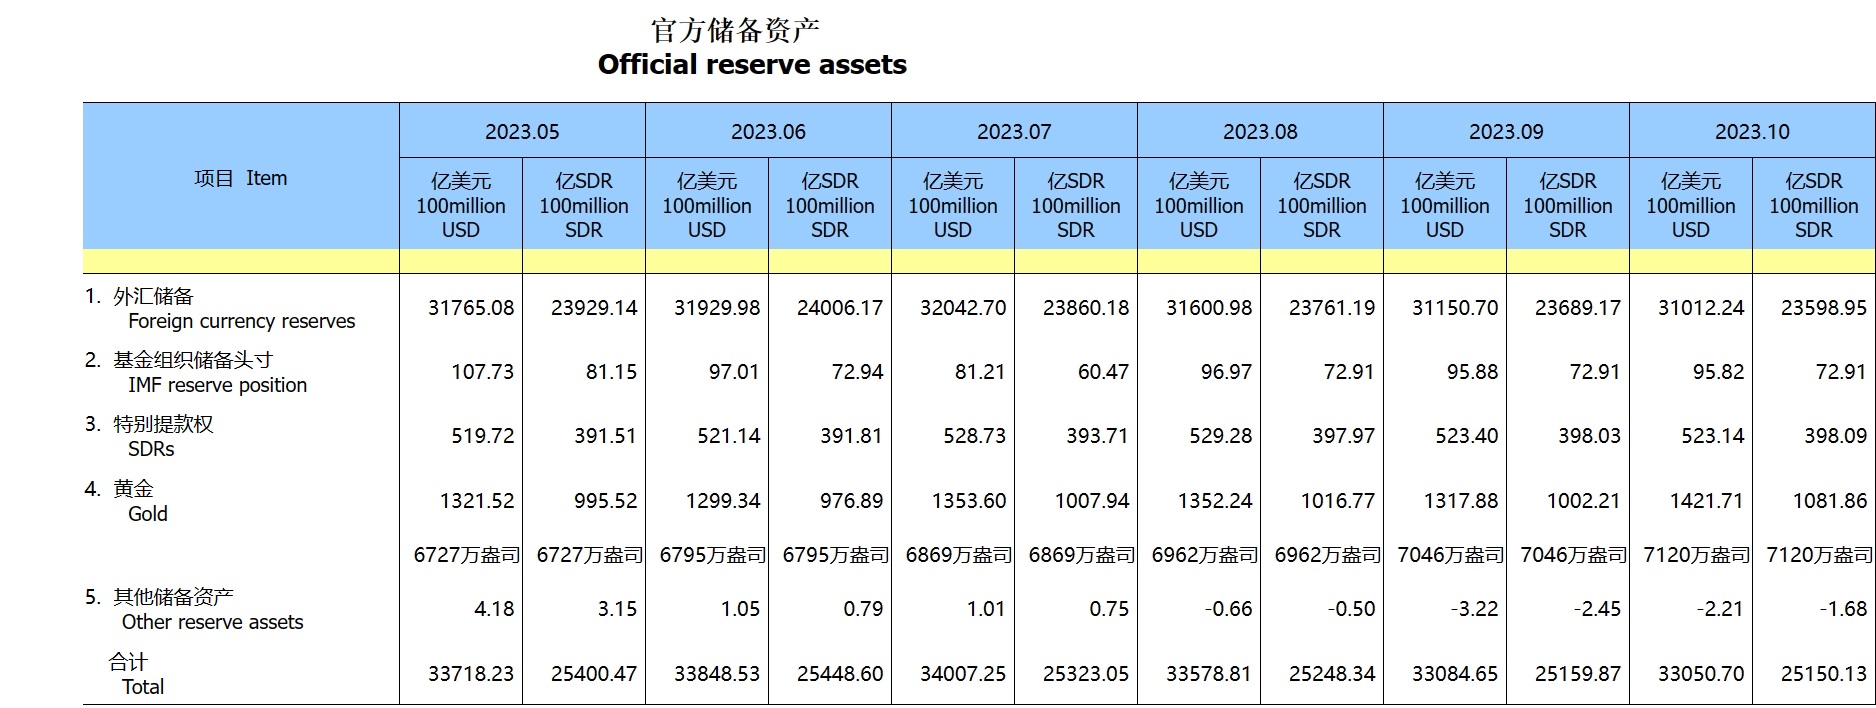 中国10月末外汇储备报31012.2亿美元 环比减少138.5亿美元